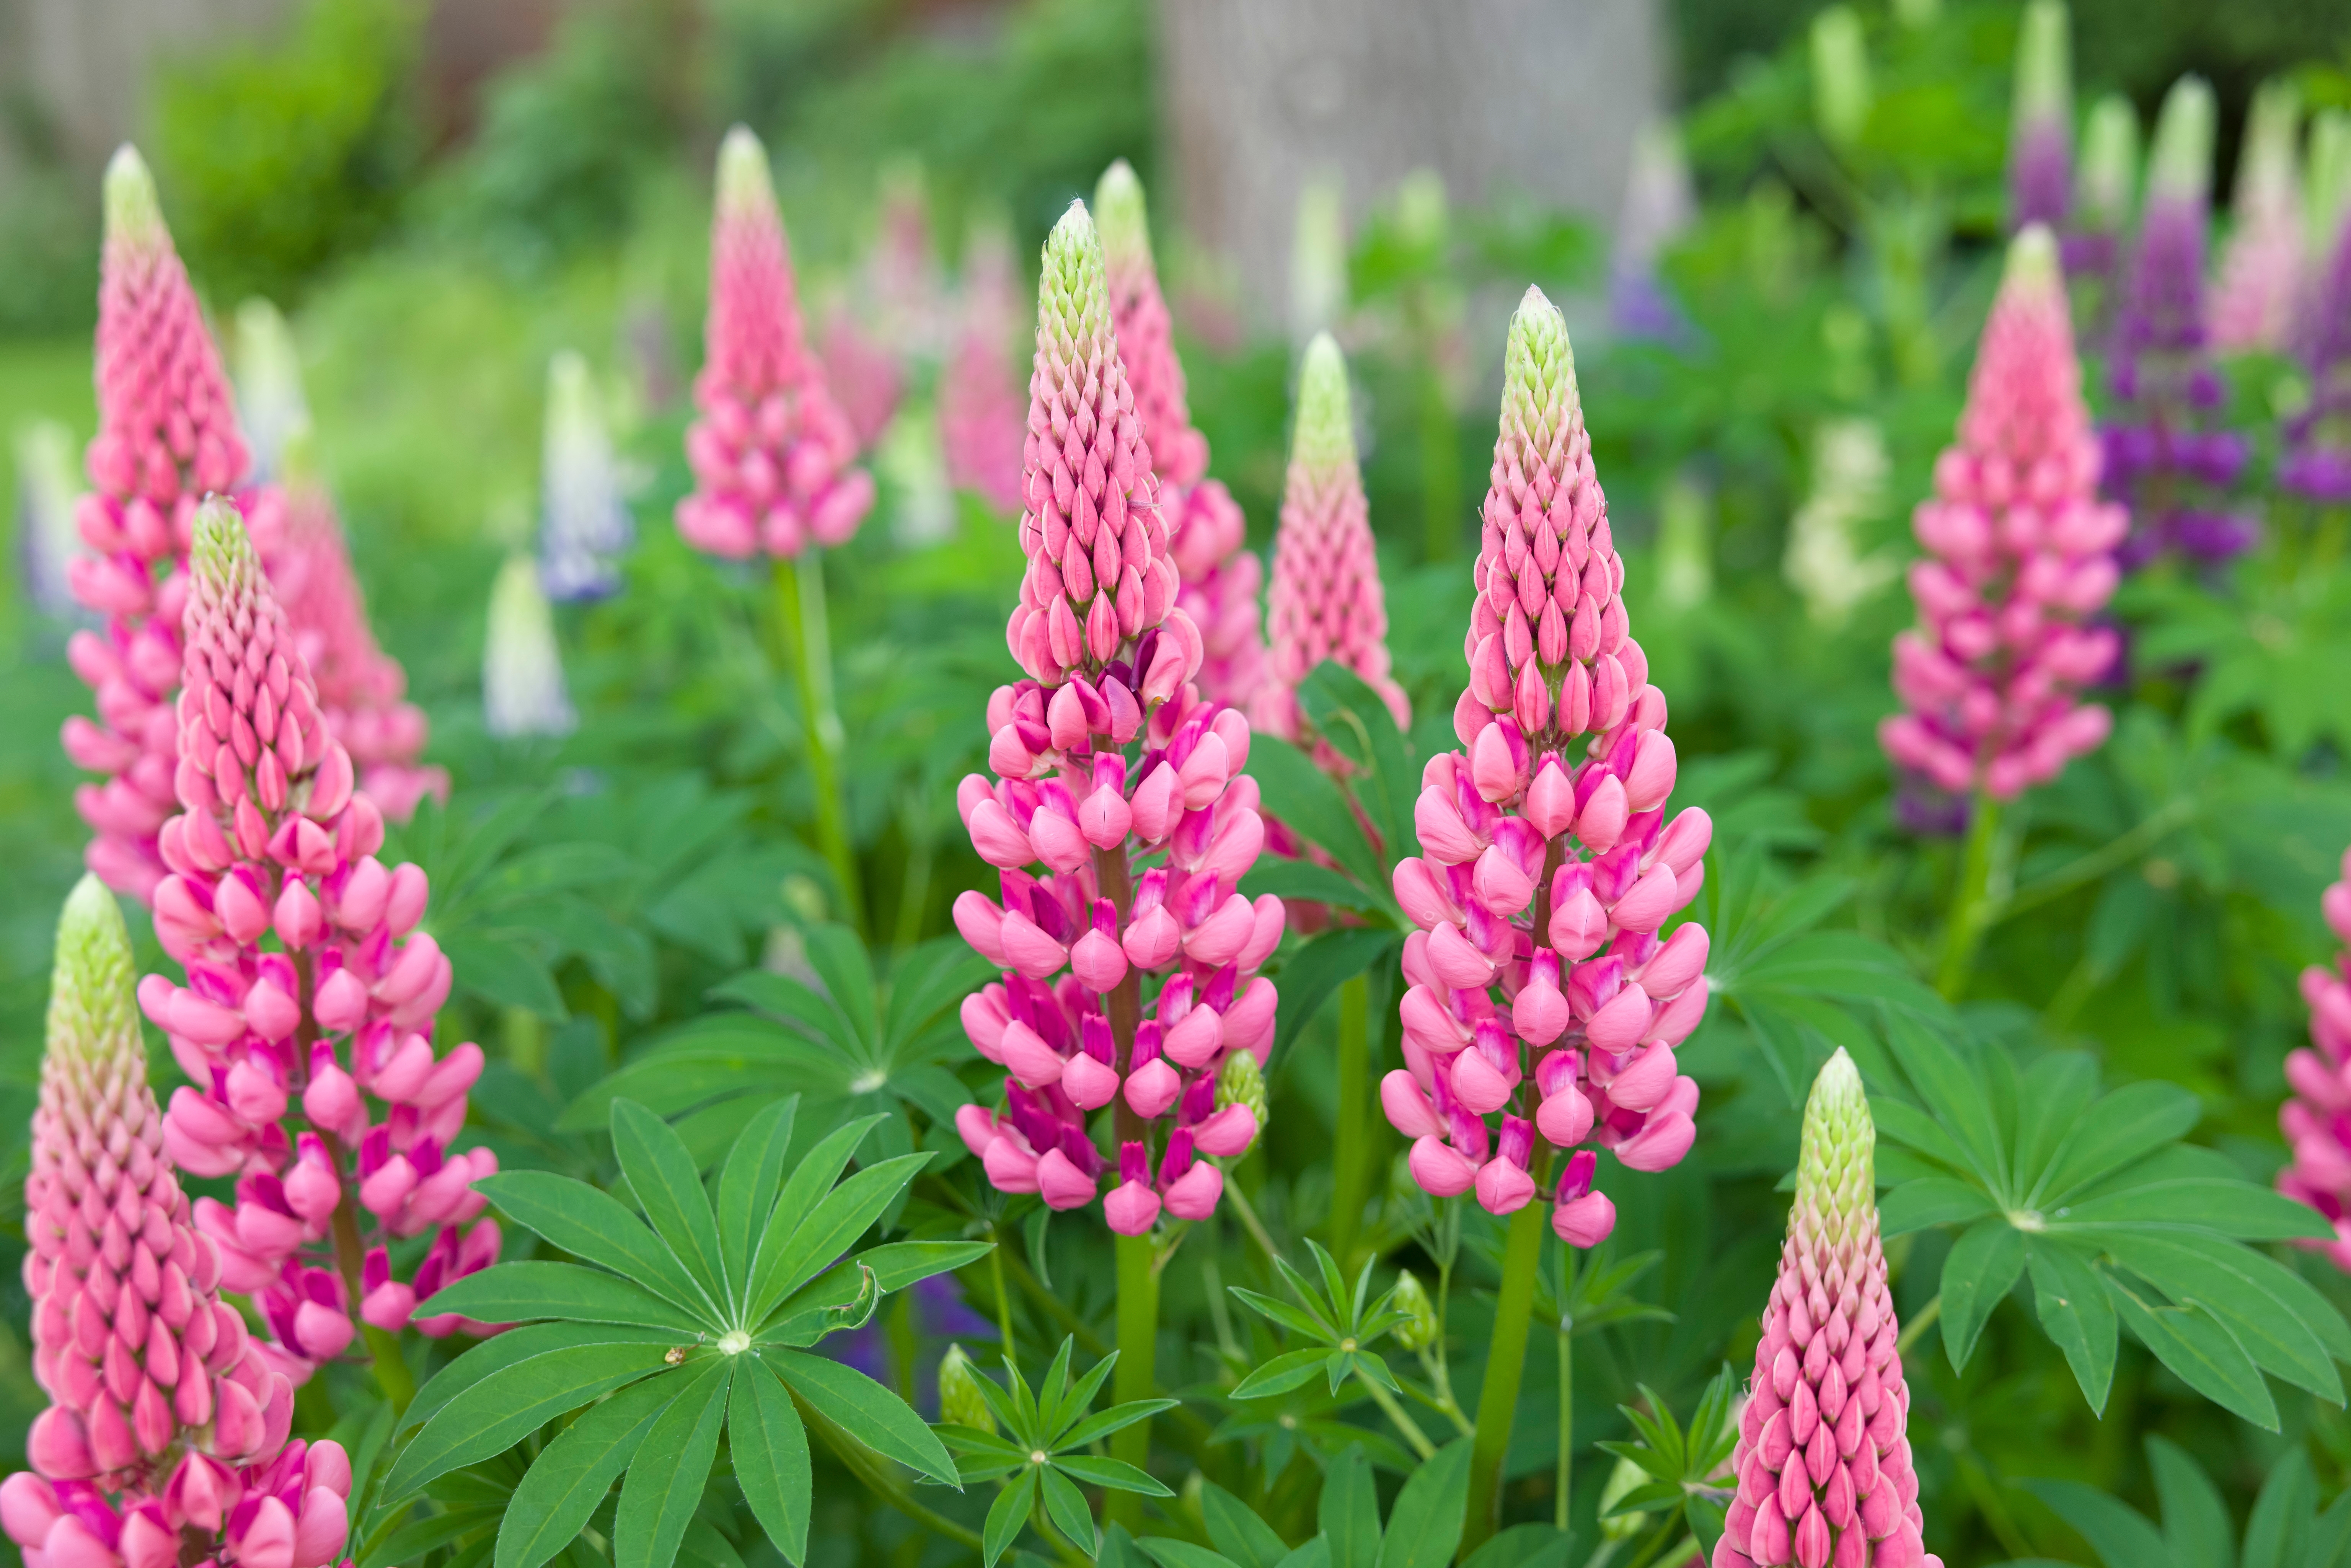 Le lupin est une plante vivace fleurie et élégante qui offre de multiples couleurs dans le jardin. Copyright (c) 2023 Paul Maguire/Shutterstock.